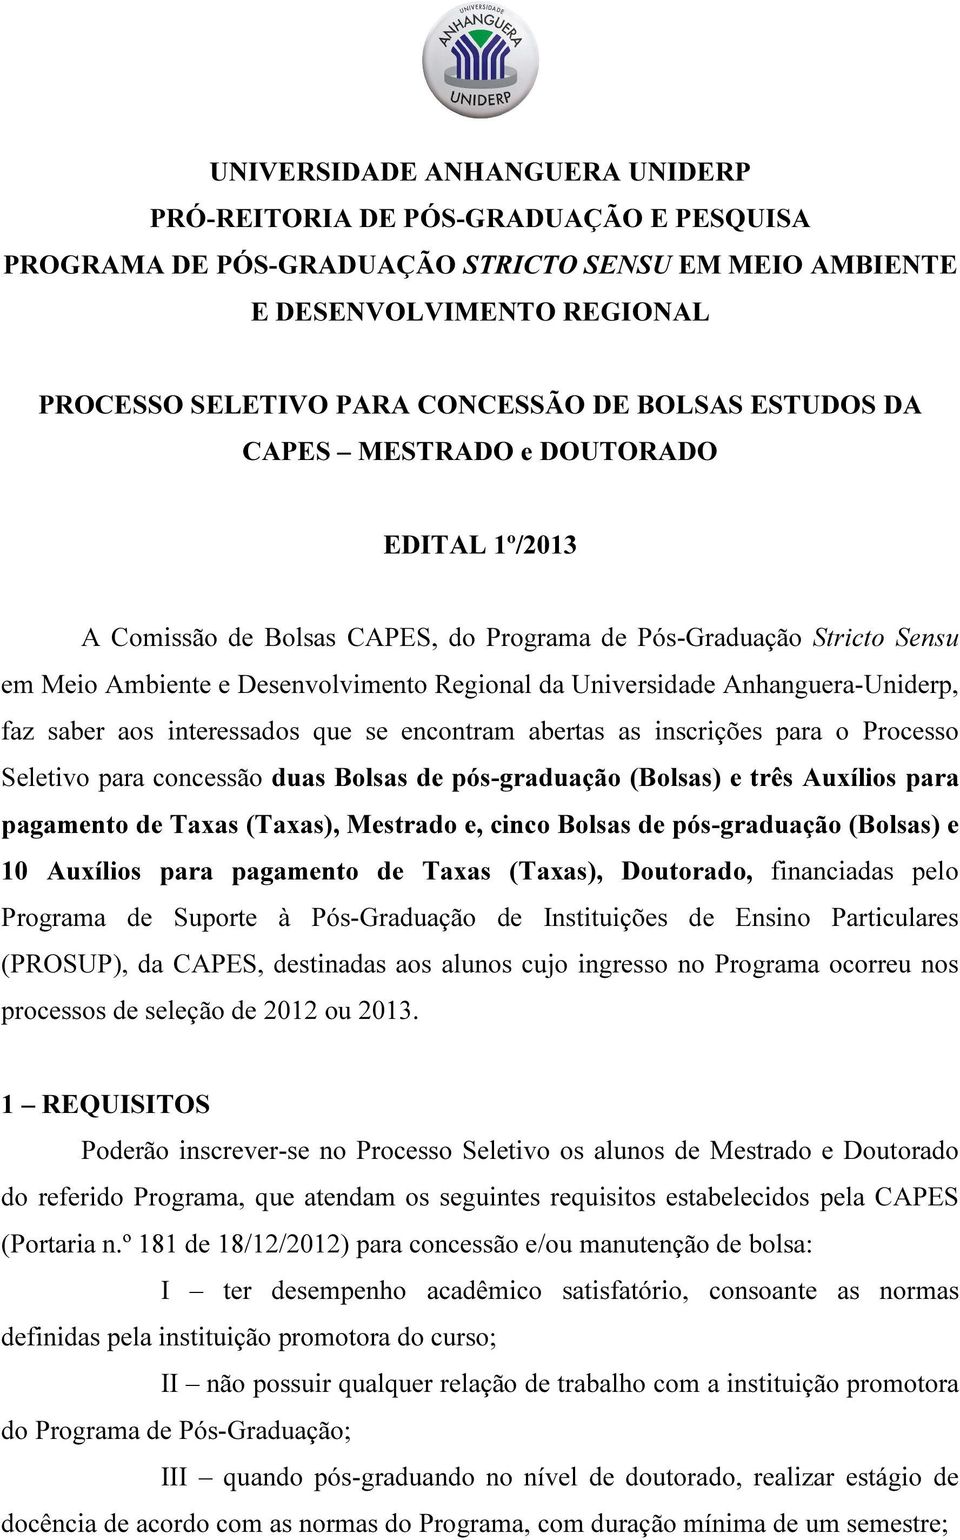 Anhanguera-Uniderp, faz saber aos interessados que se encontram abertas as inscrições para o Processo Seletivo para concessão duas Bolsas de pós-graduação (Bolsas) e três Auxílios para pagamento de